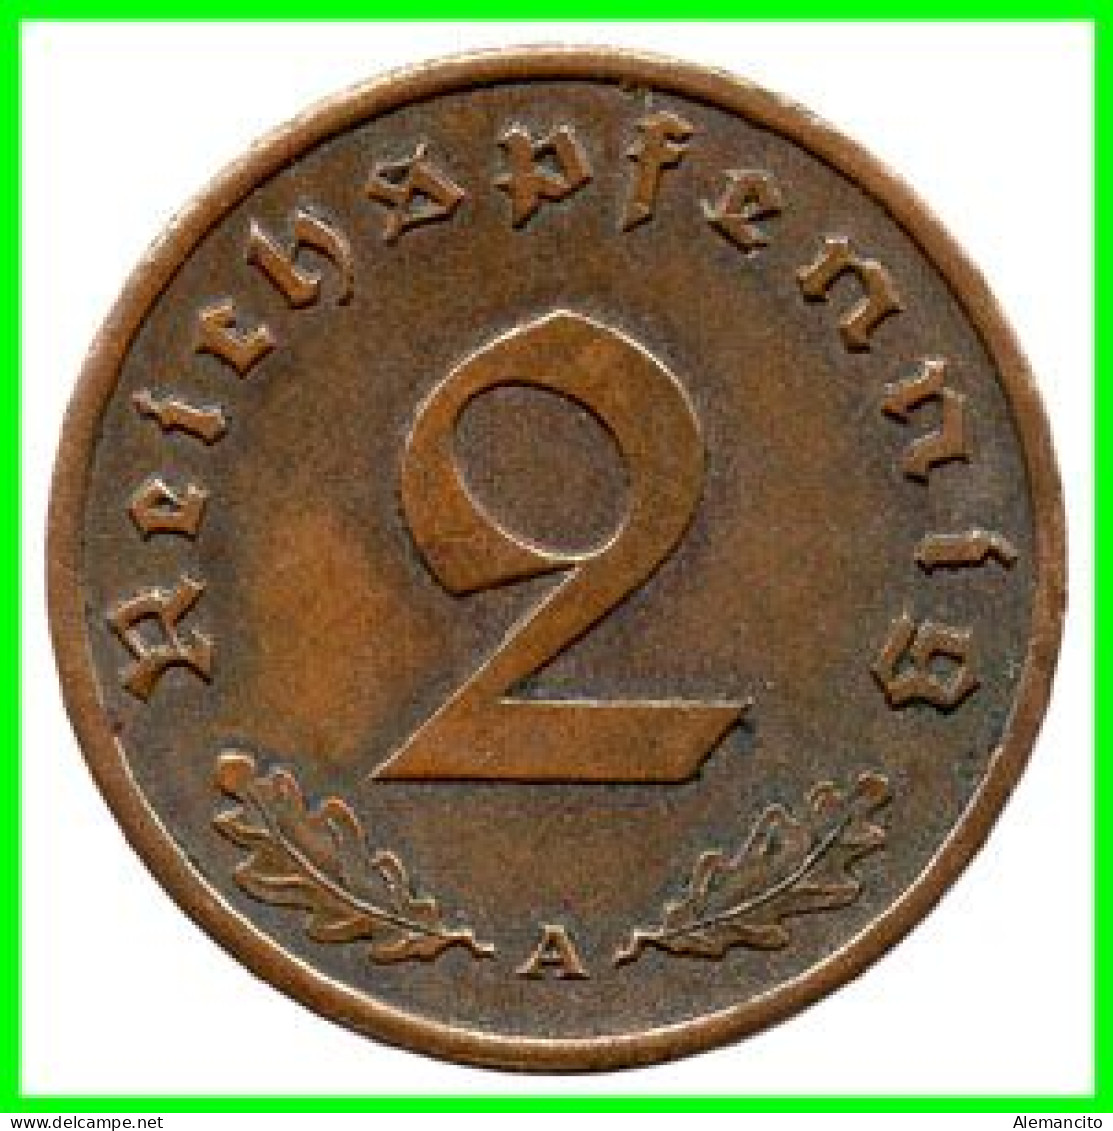 GERMANY - ALEMANIA DEUTFCHES REICH SERIE DE 7 MONEDAS DE 2 REICHSPFENNIG AÑO 1939 BRONCE 2ª GUERRA MUNDIAL - 2 Reichspfennig